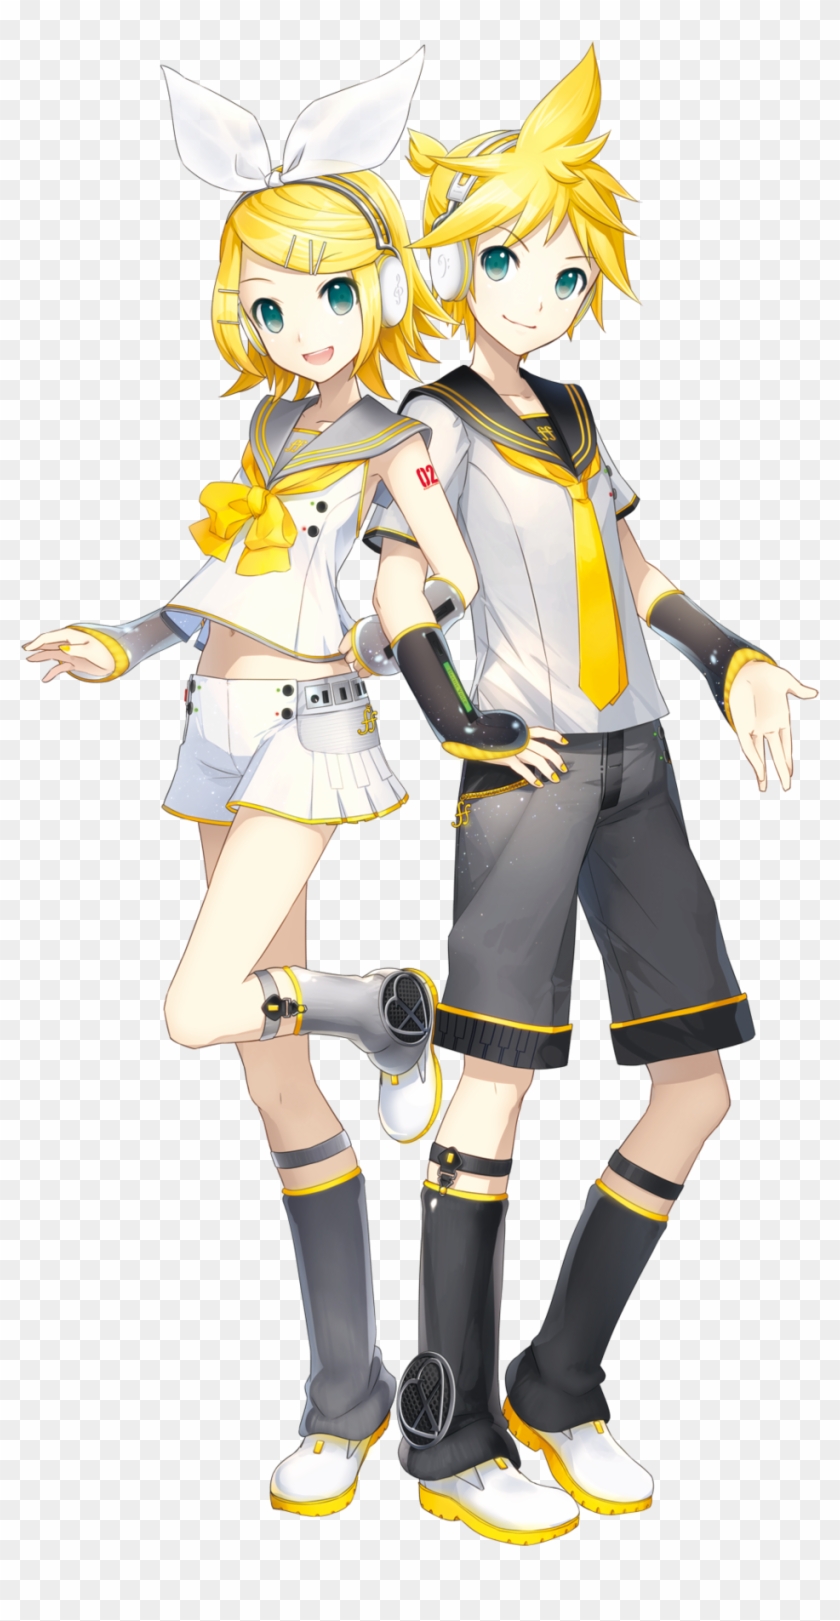 Kagamine Rin And Len Vocaloid 4 - Kagamine Rin And Len Clipart #273341